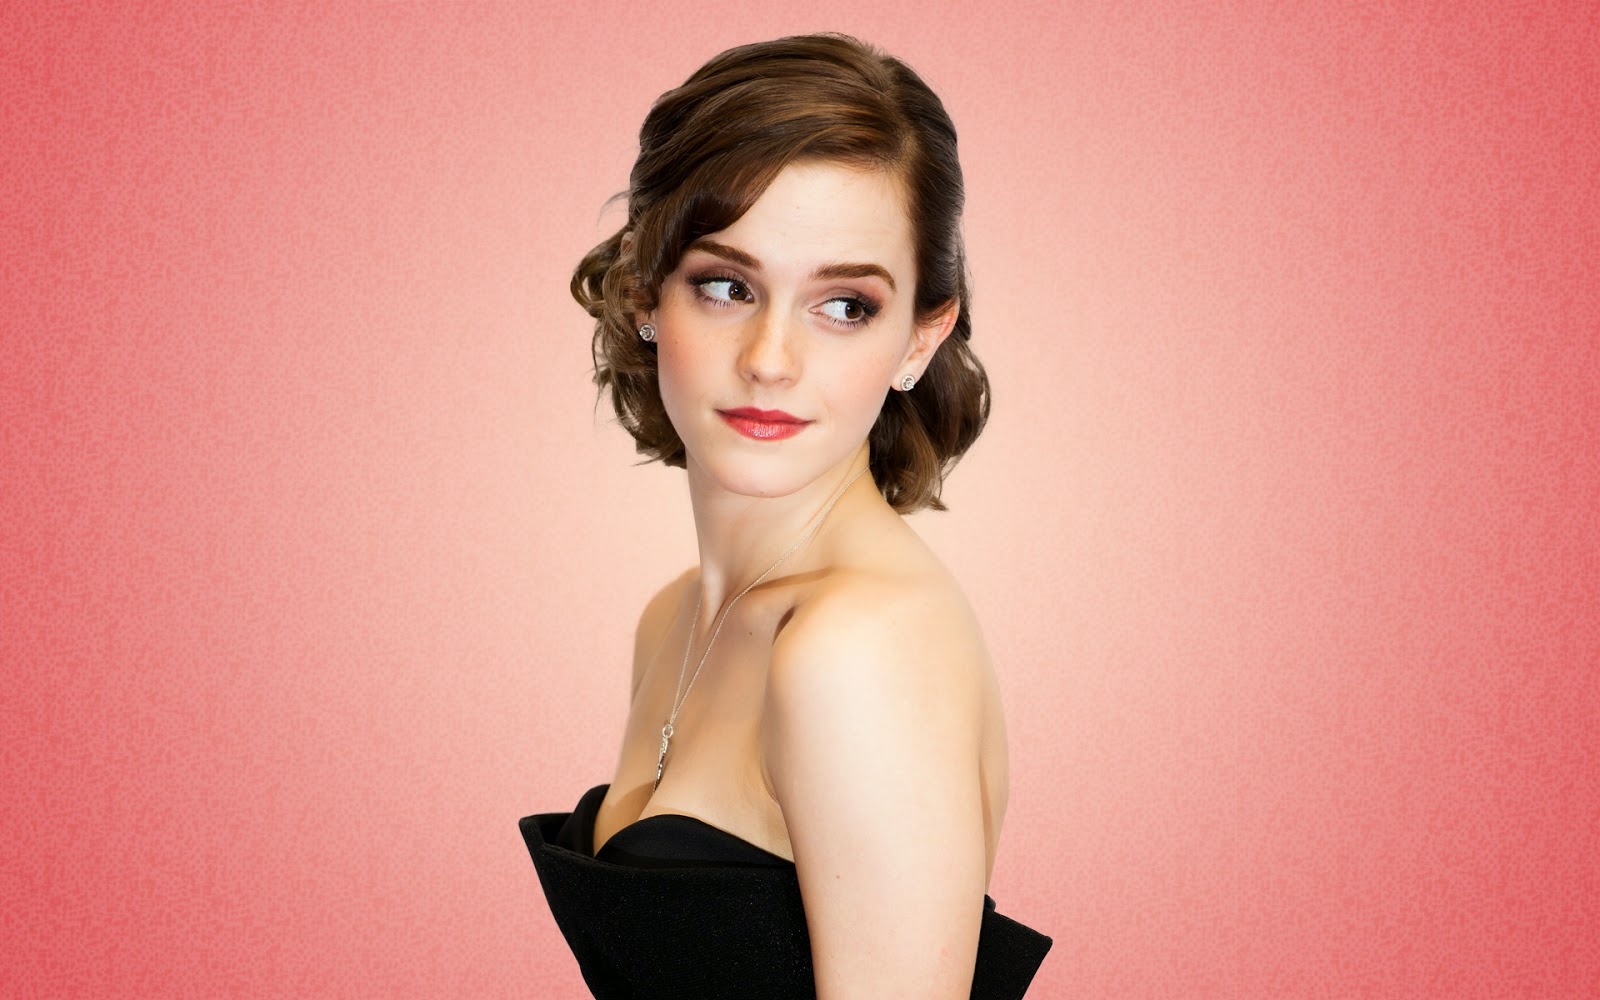 Emma Watson 3d Porn Galleries - Emma Watson Cast As Belle In New Beauty & The Beast Film - sandwichjohnfilms